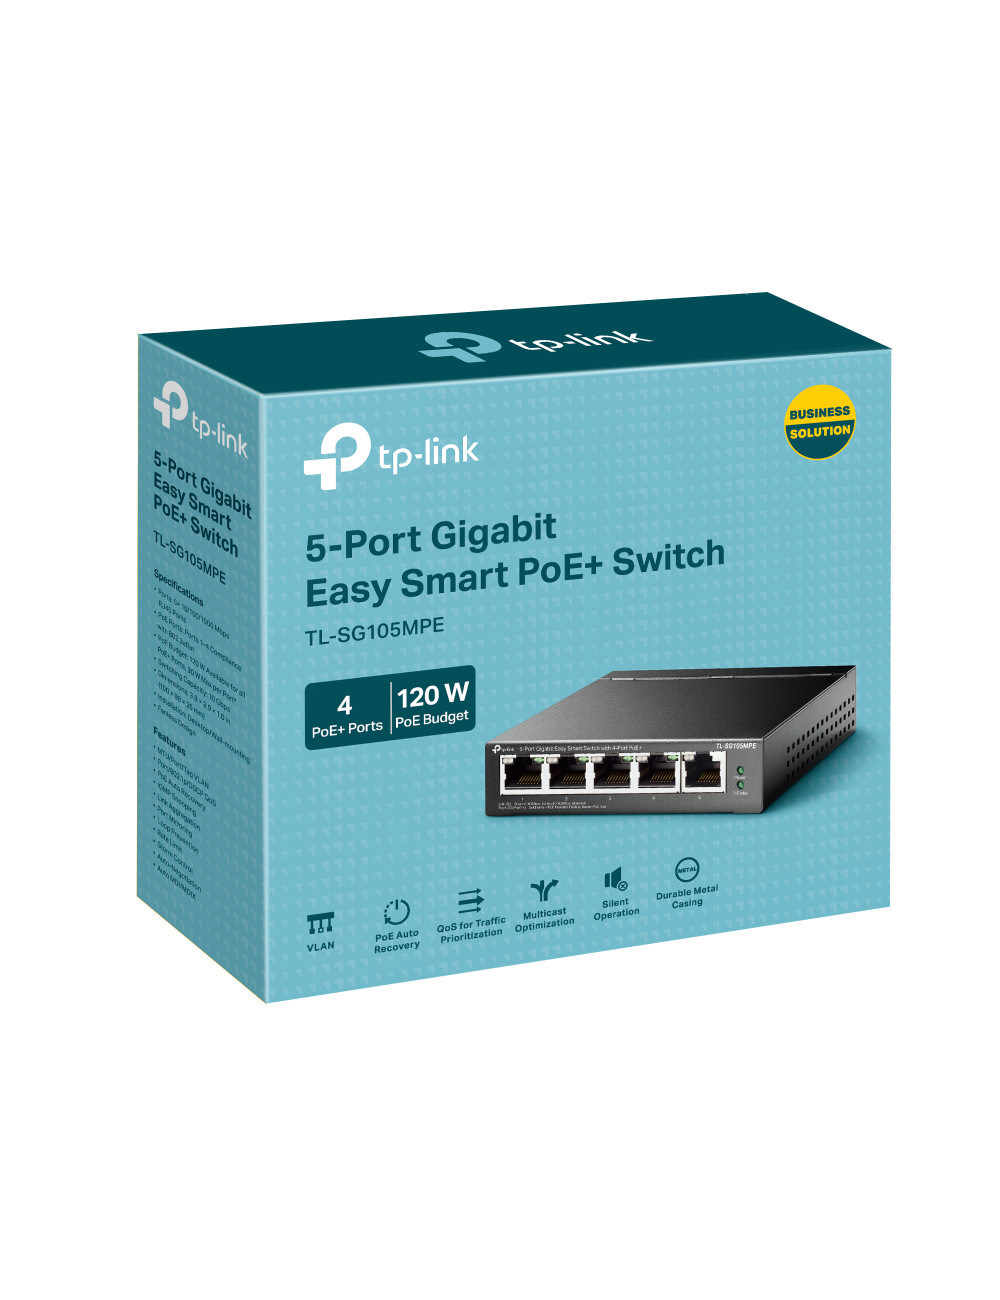 TP Link - 8-Port Gigabit Easy Smart Switch with 4-Port PoE TL